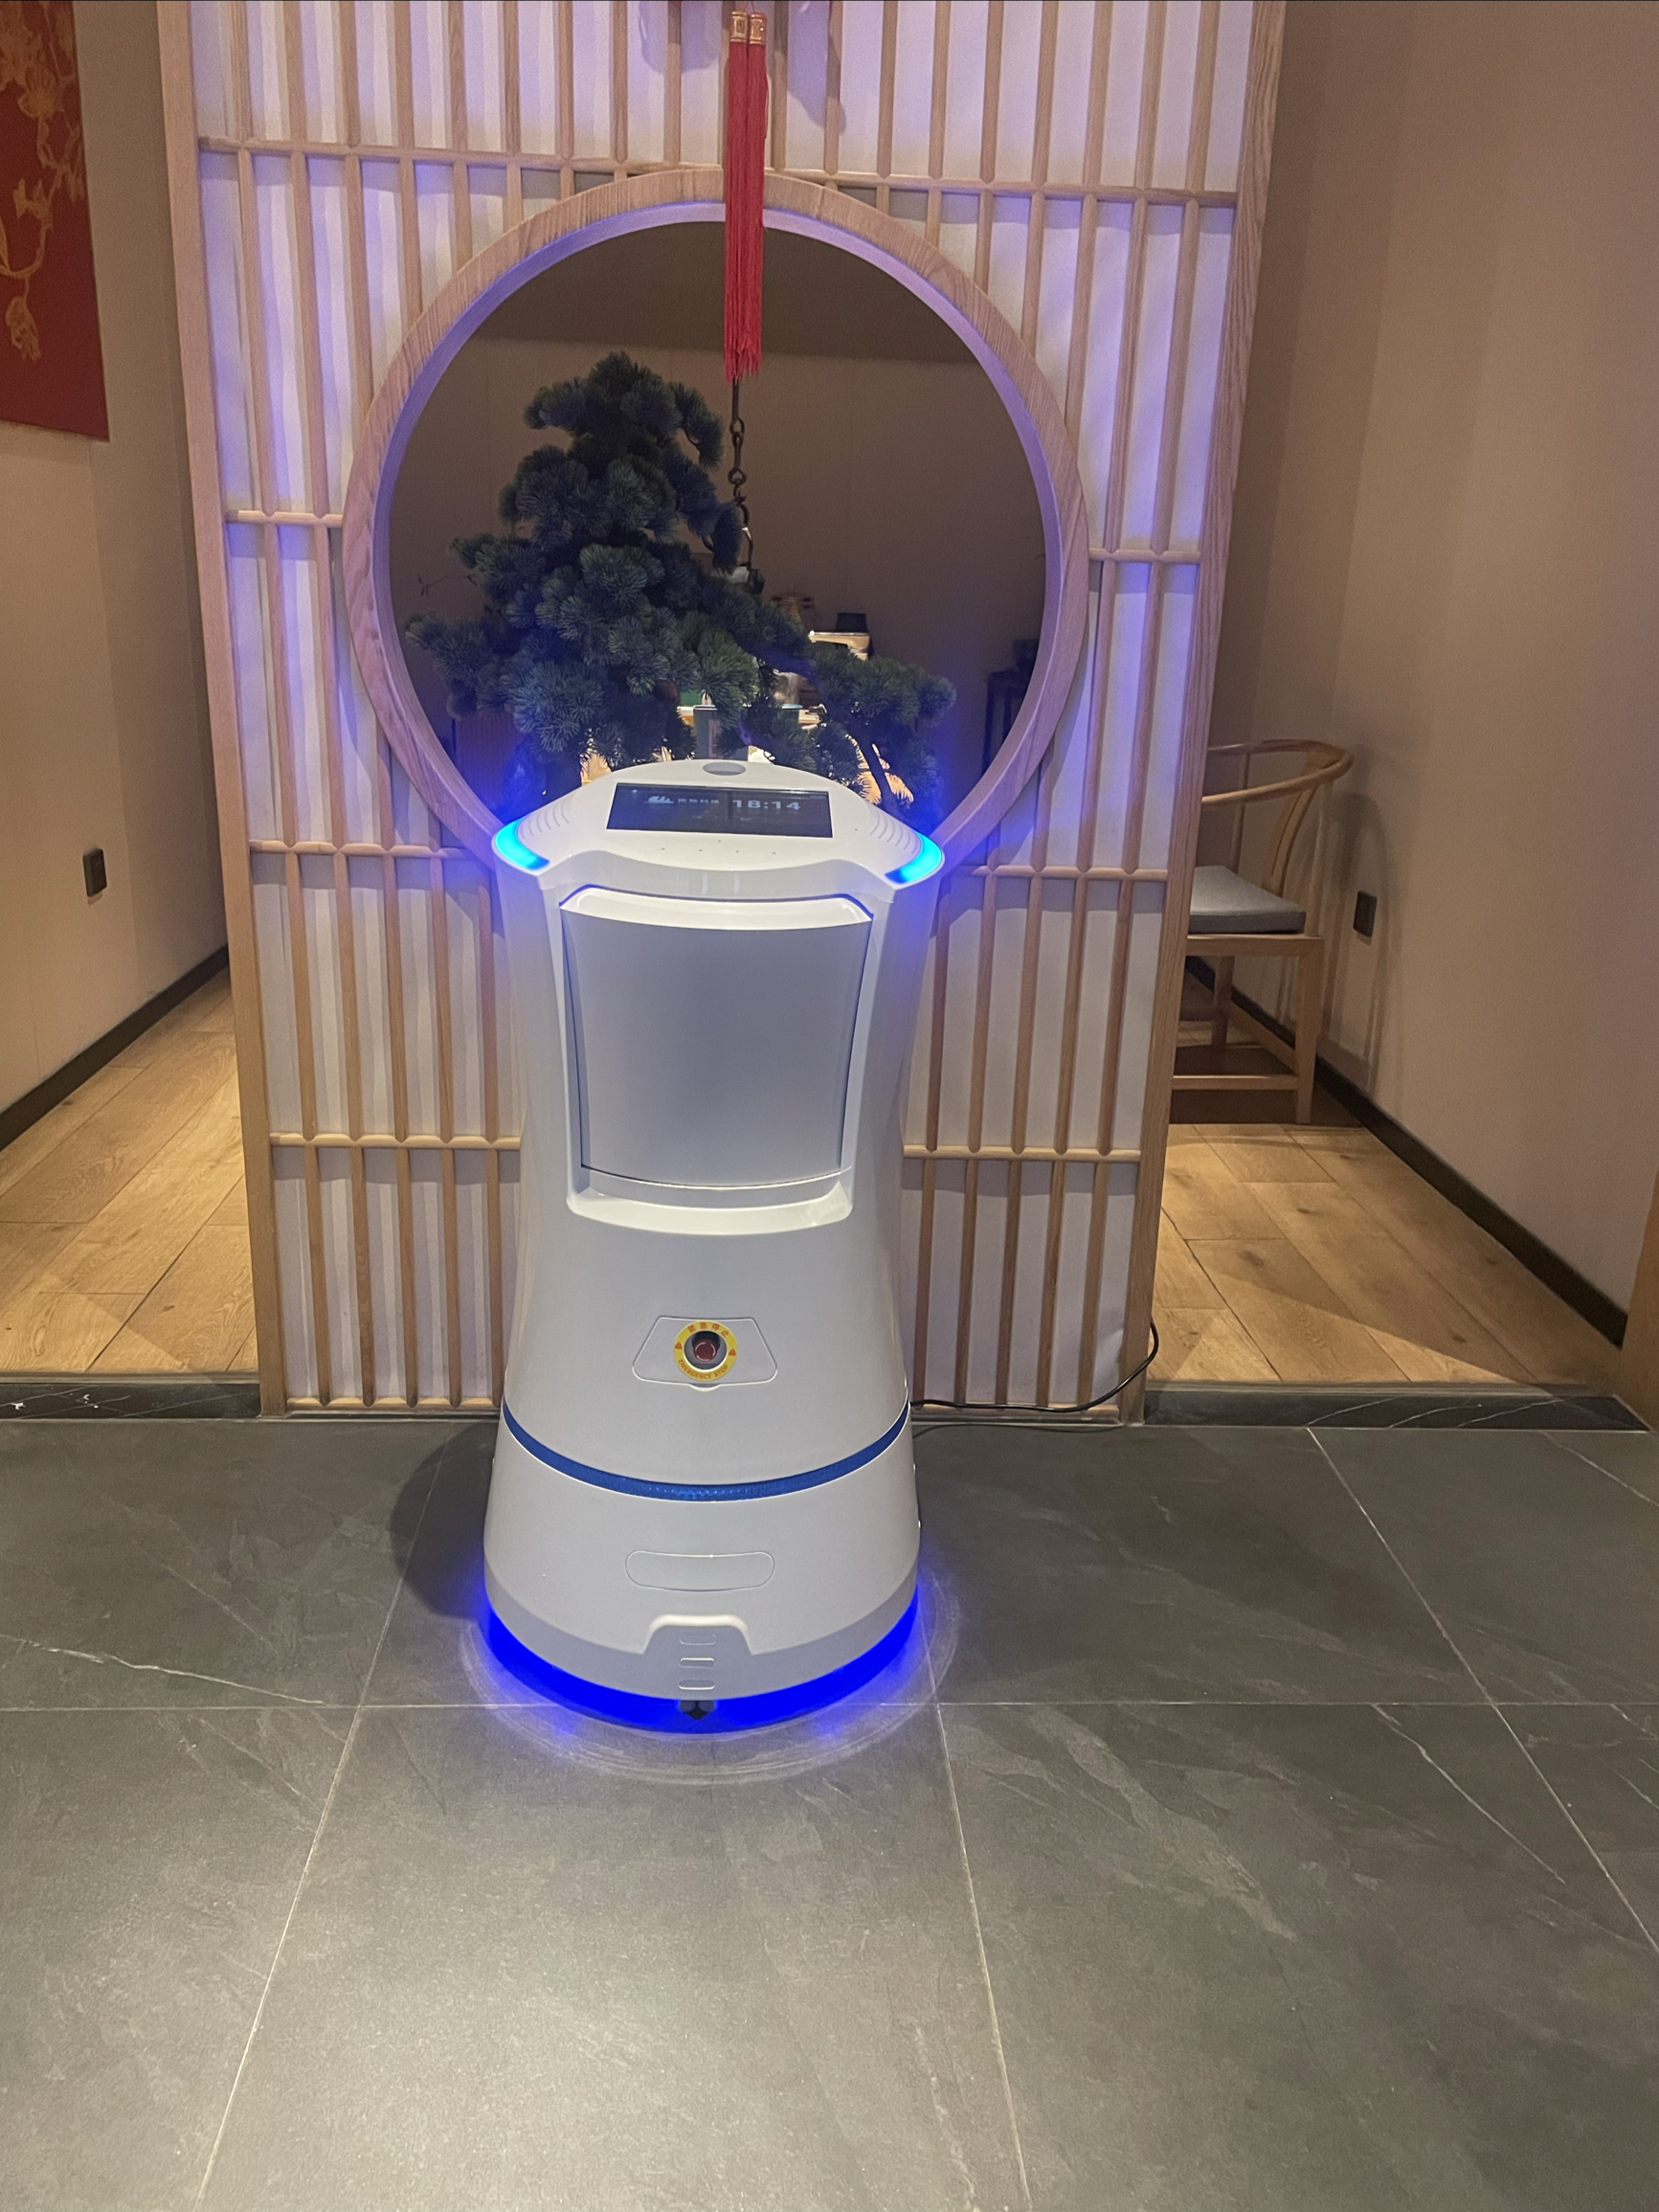 酒店机器人上线啦！它会帮你送餐，和你聊天，开启新的智能时代，给您带来更高效的服务。赶快来体验一下吧！